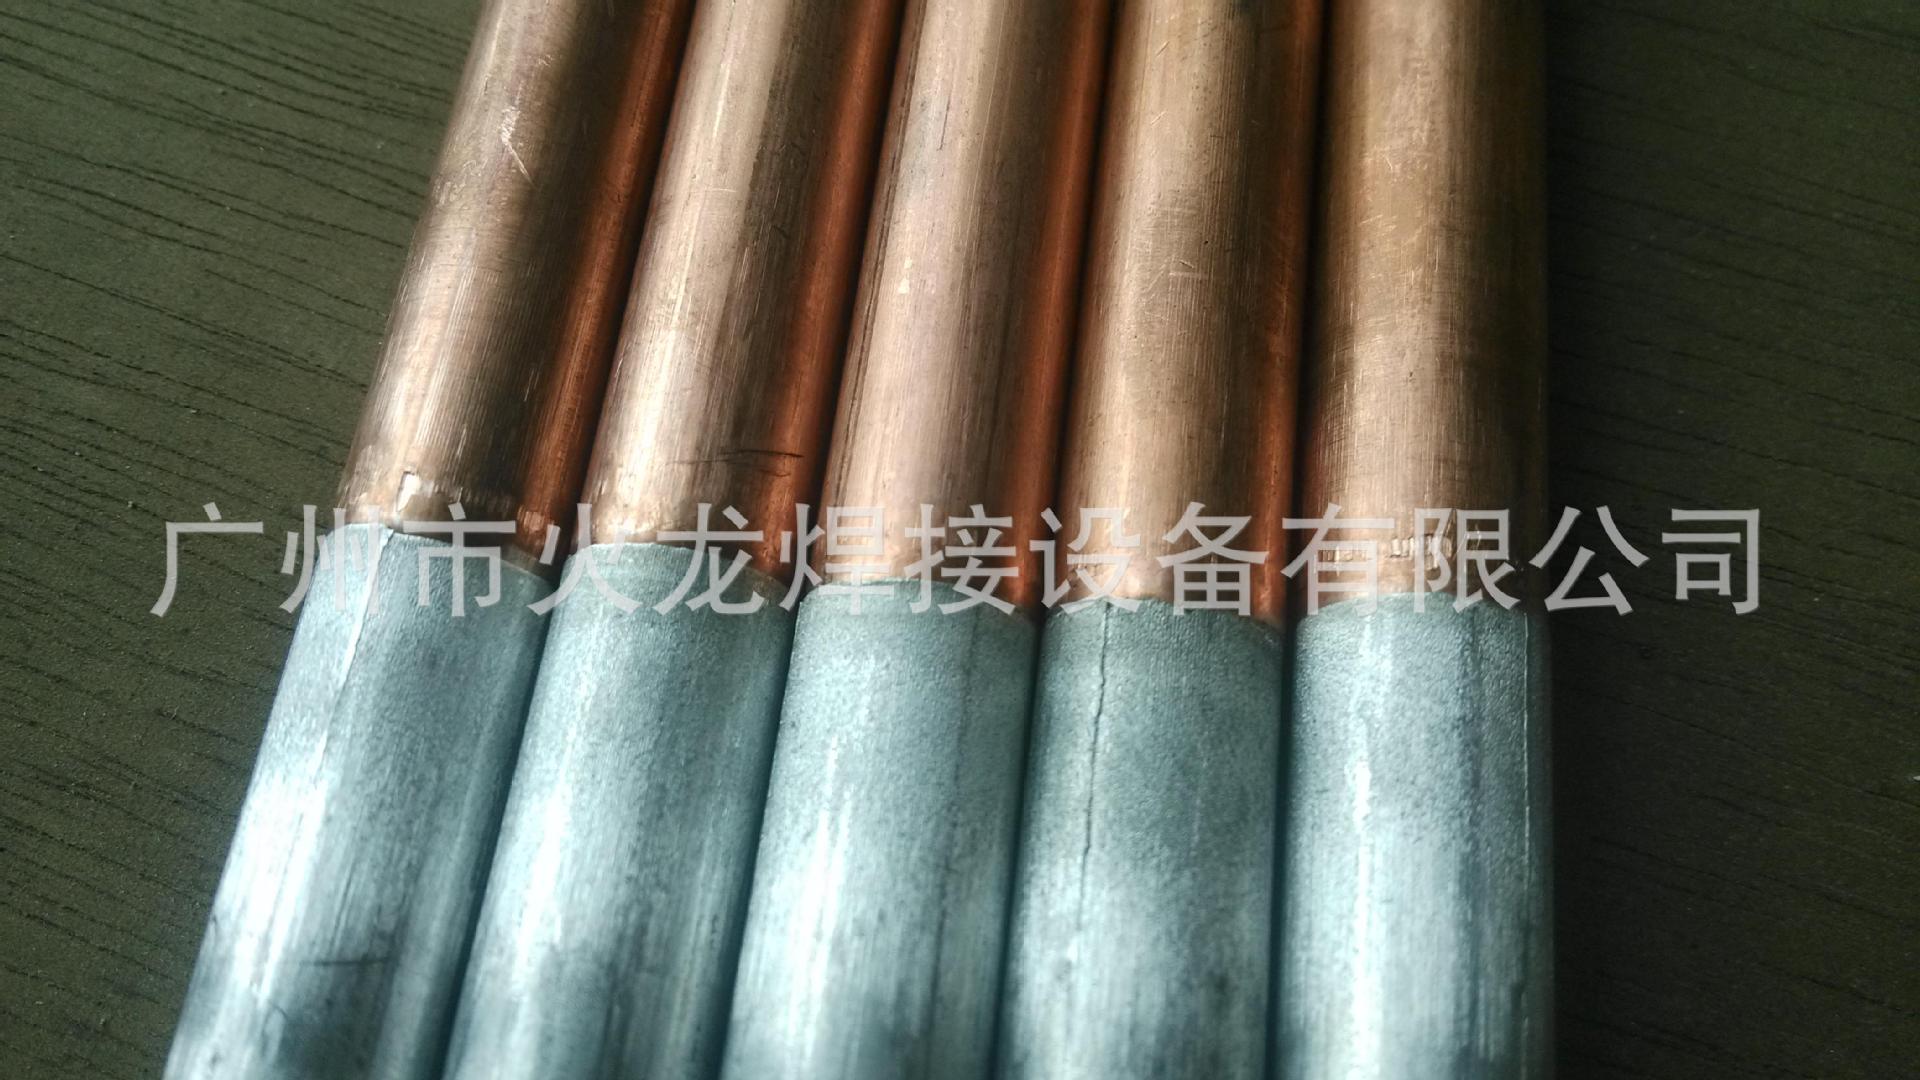 广州空调冰箱铜铝管对焊机 铜管铝管对焊设备  焊接铜铝管厂家